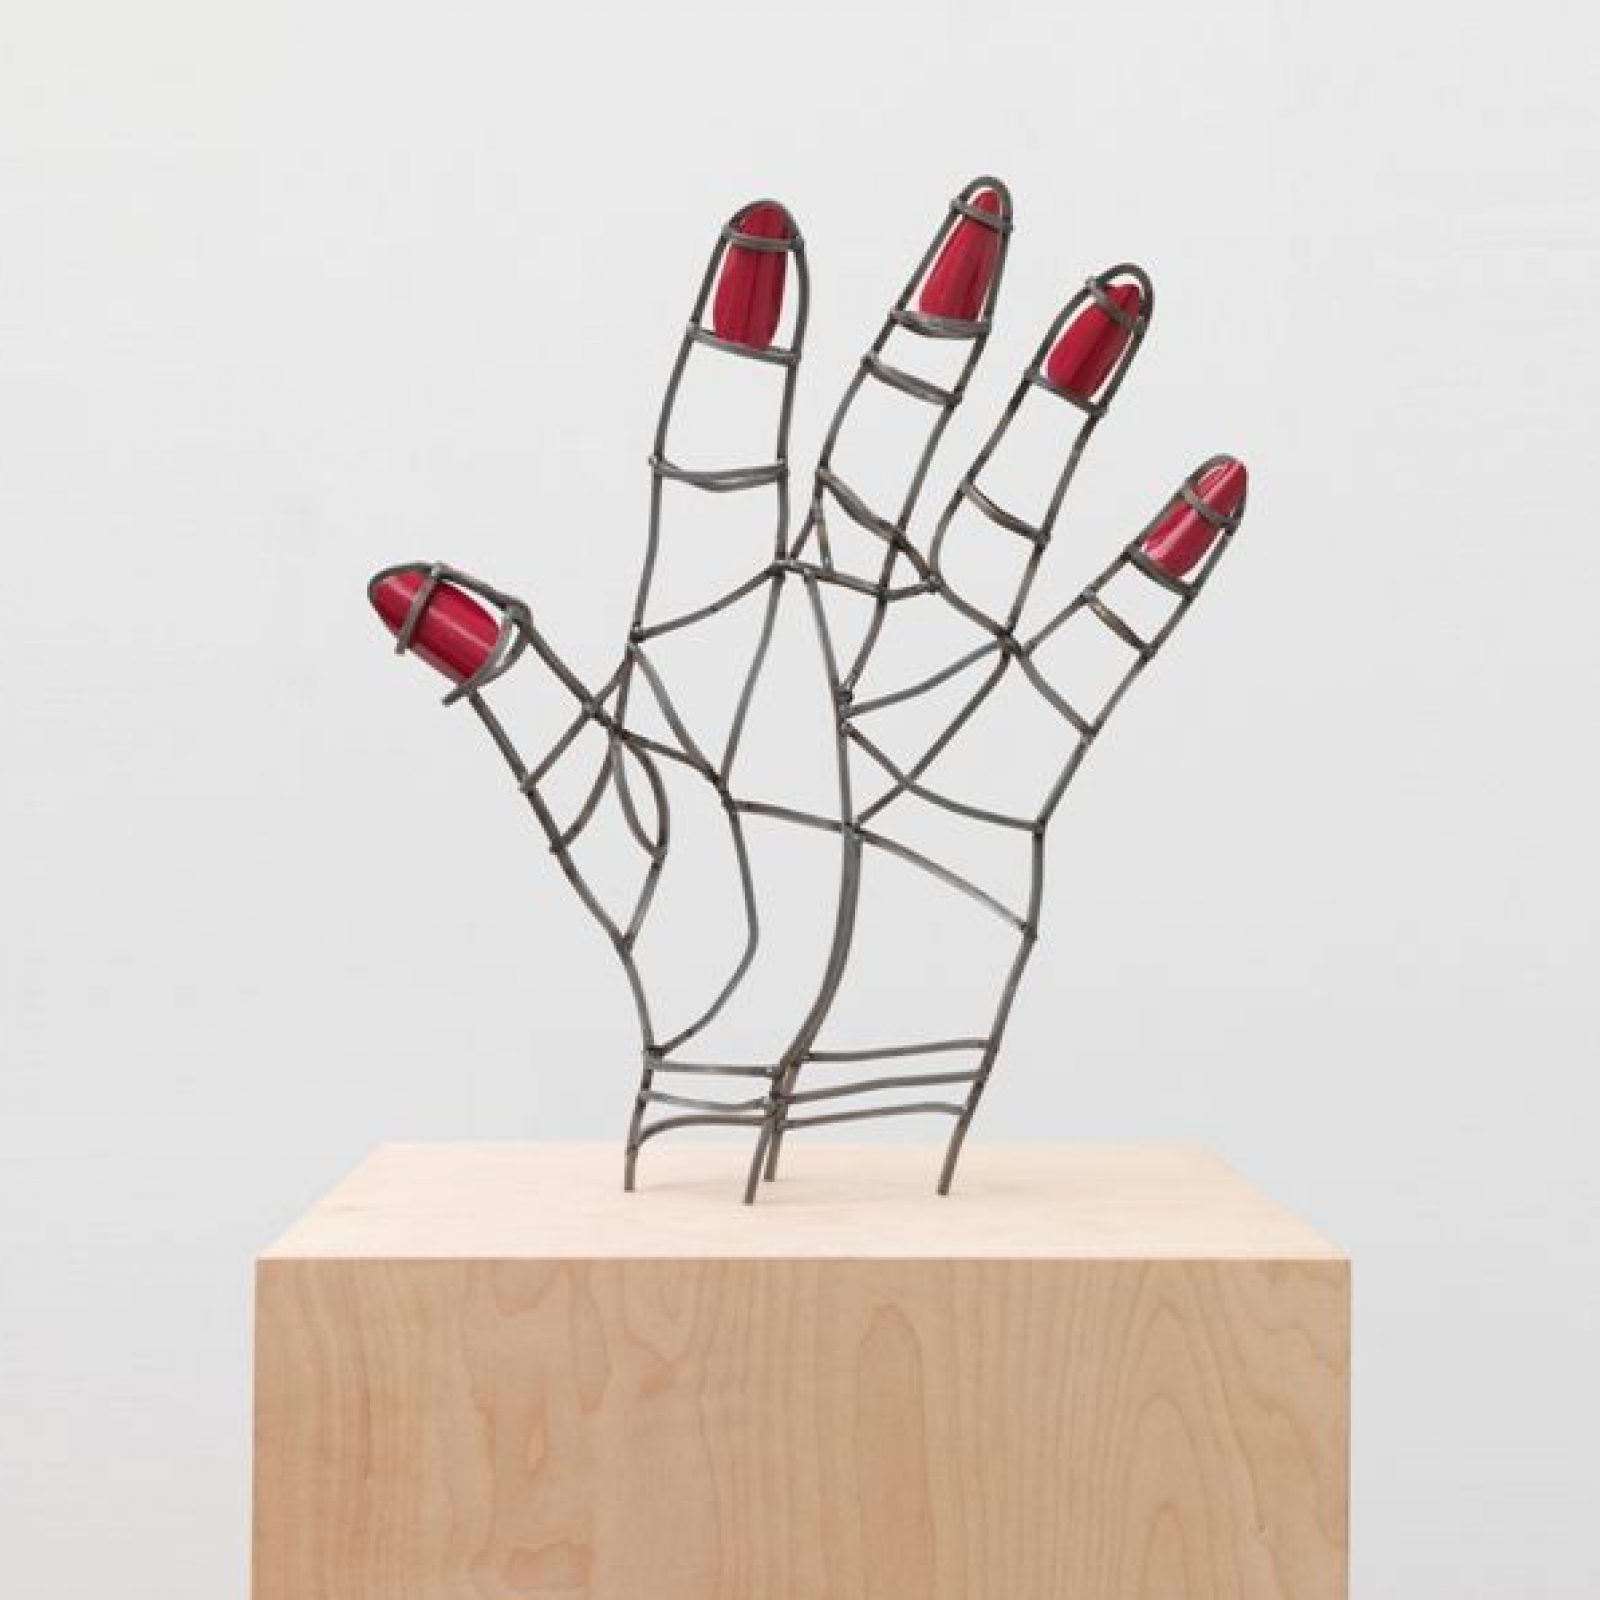 Teresa Burga, Mano mal dibujada, 2015, acero y barniz, 42 x 36 x 8.5 cm. Cortesía de la artista y Galerie Barbara Thumm, Berlín